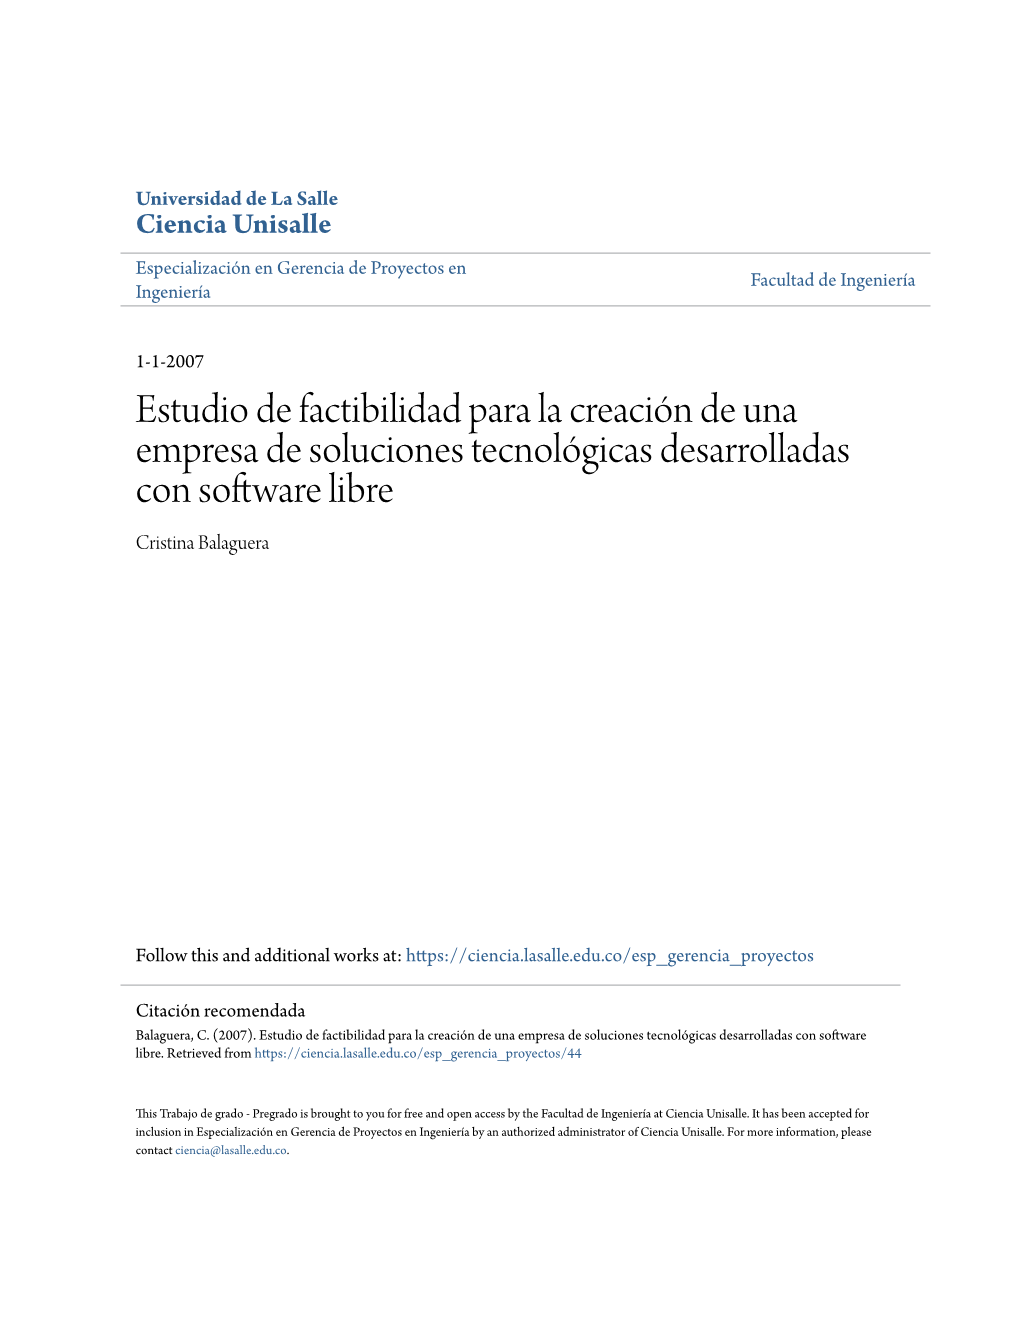 Estudio De Factibilidad Para La Creación De Una Empresa De Soluciones Tecnológicas Desarrolladas Con Software Libre Cristina Balaguera